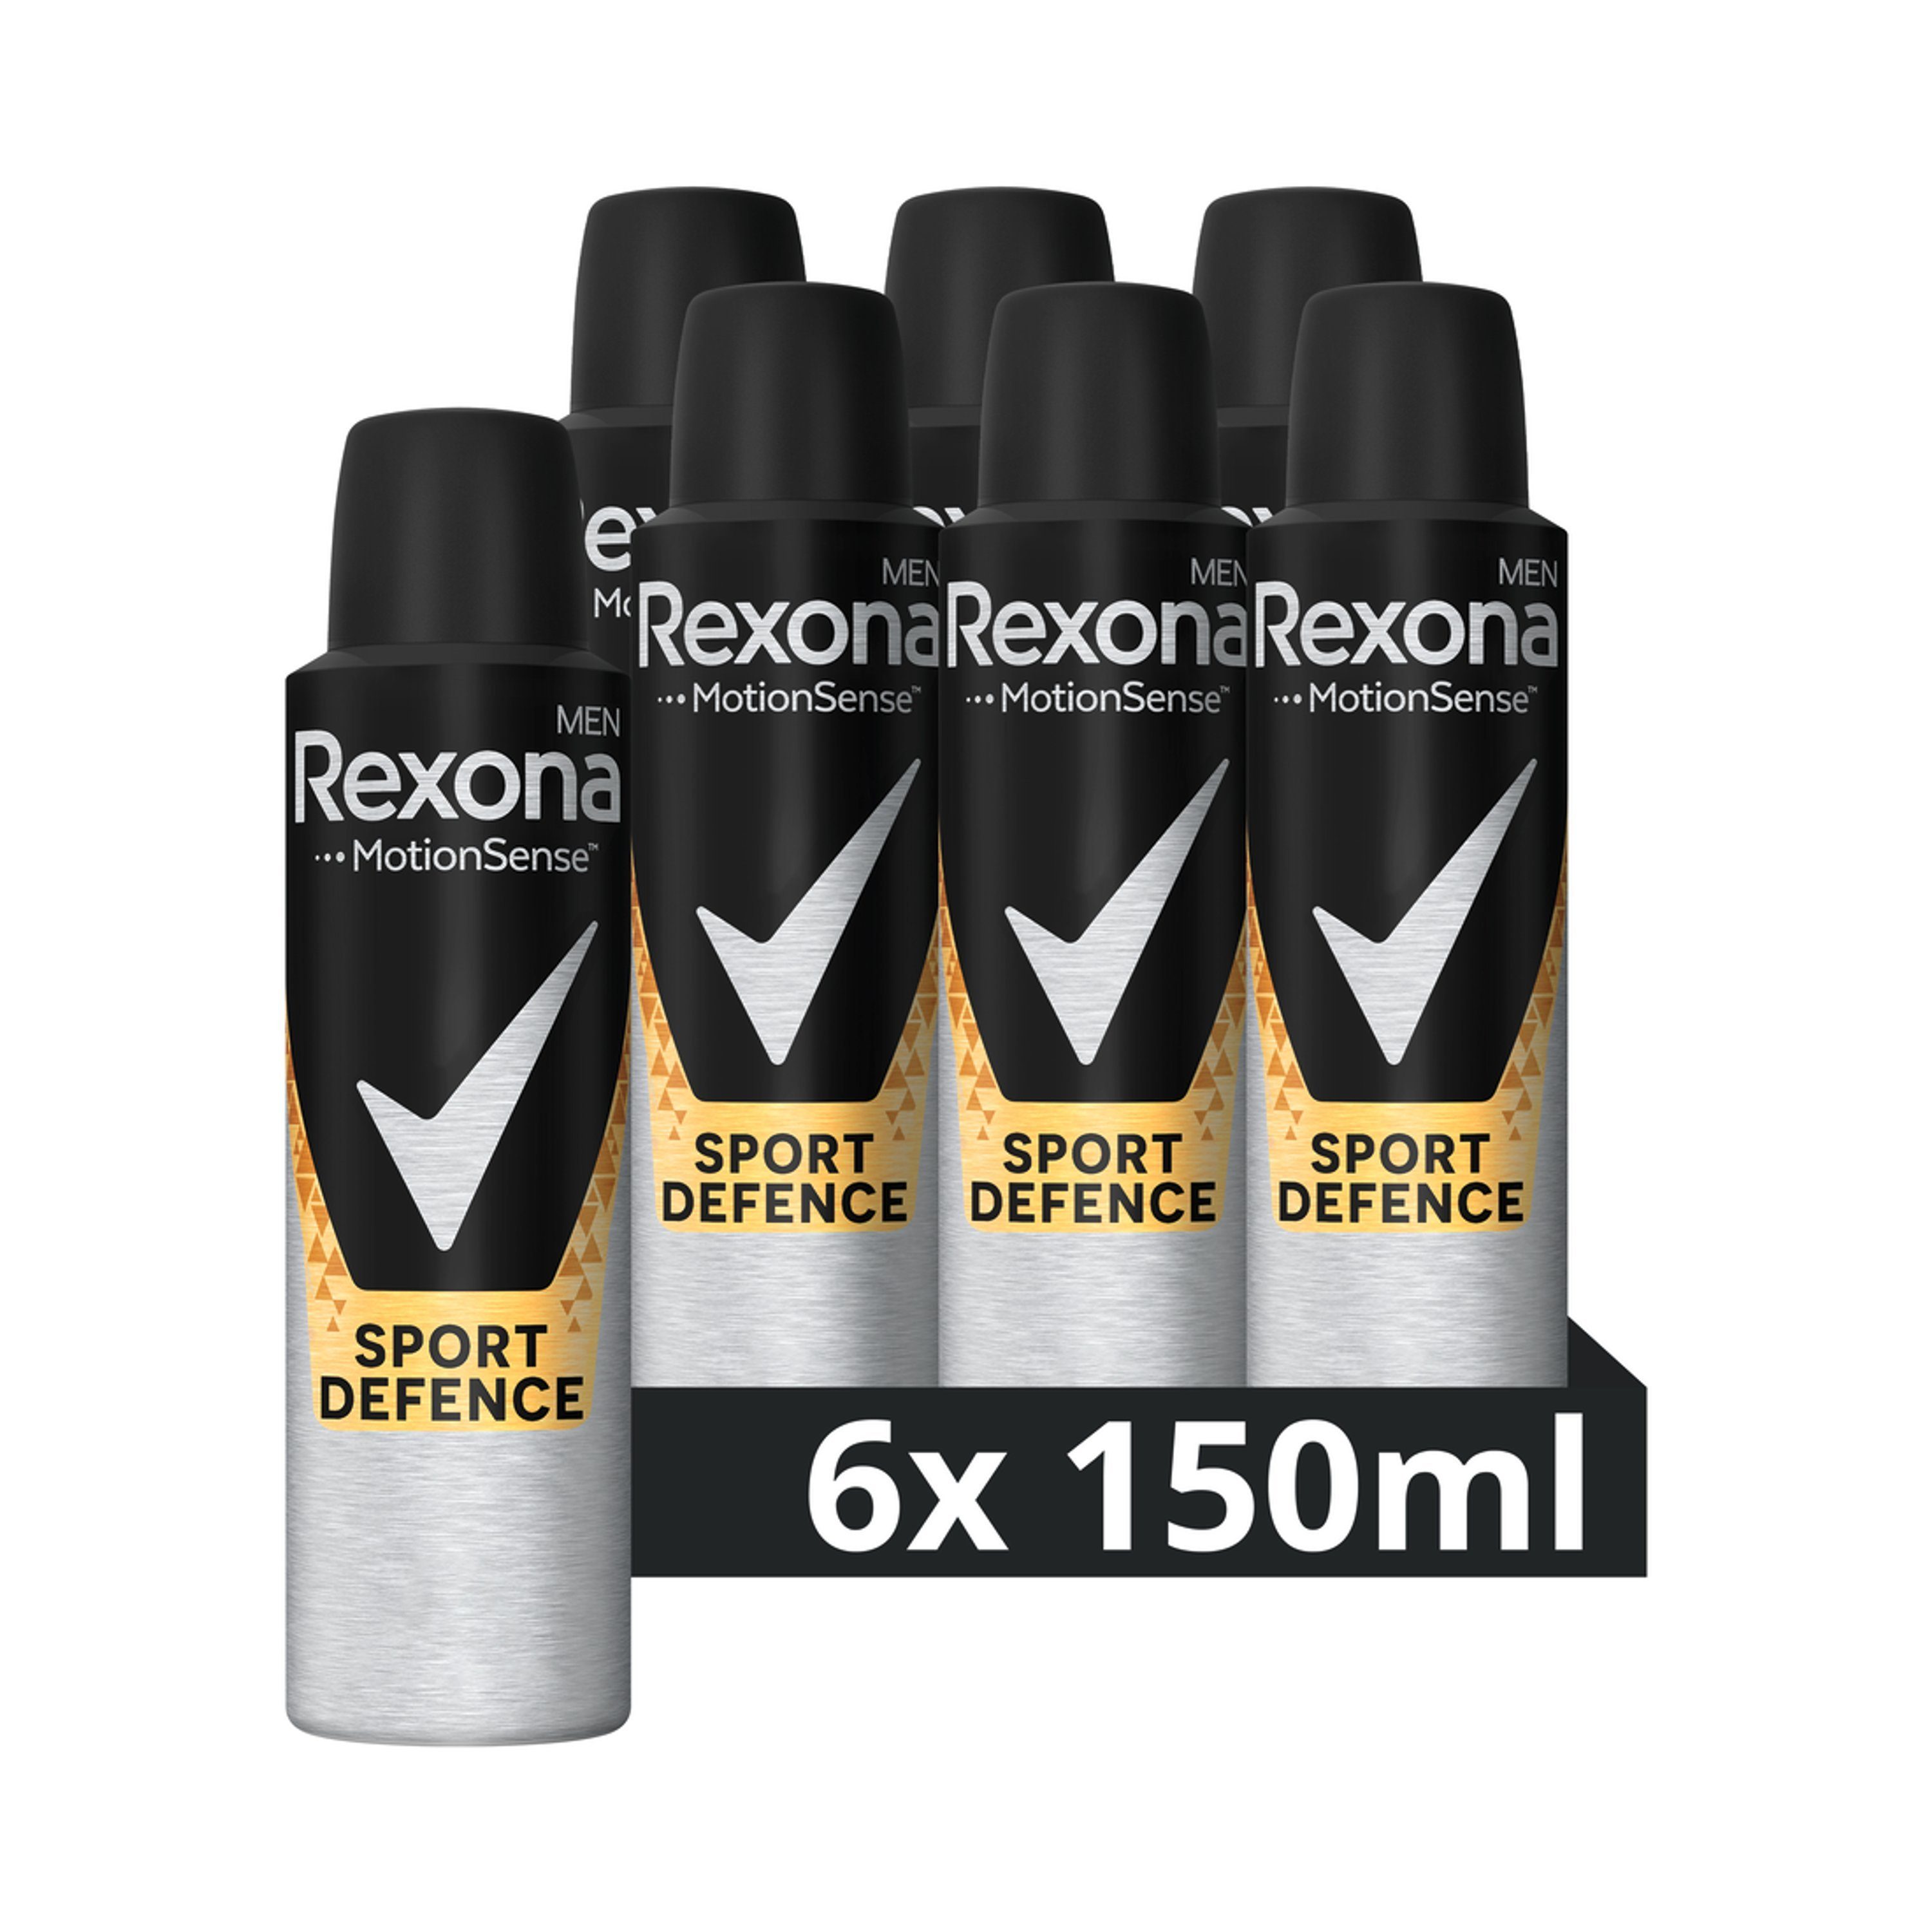 Rexona Deo-Set Rexona 150ml 6x Men Spray Deo Männerdeo MotionSense Deodorant